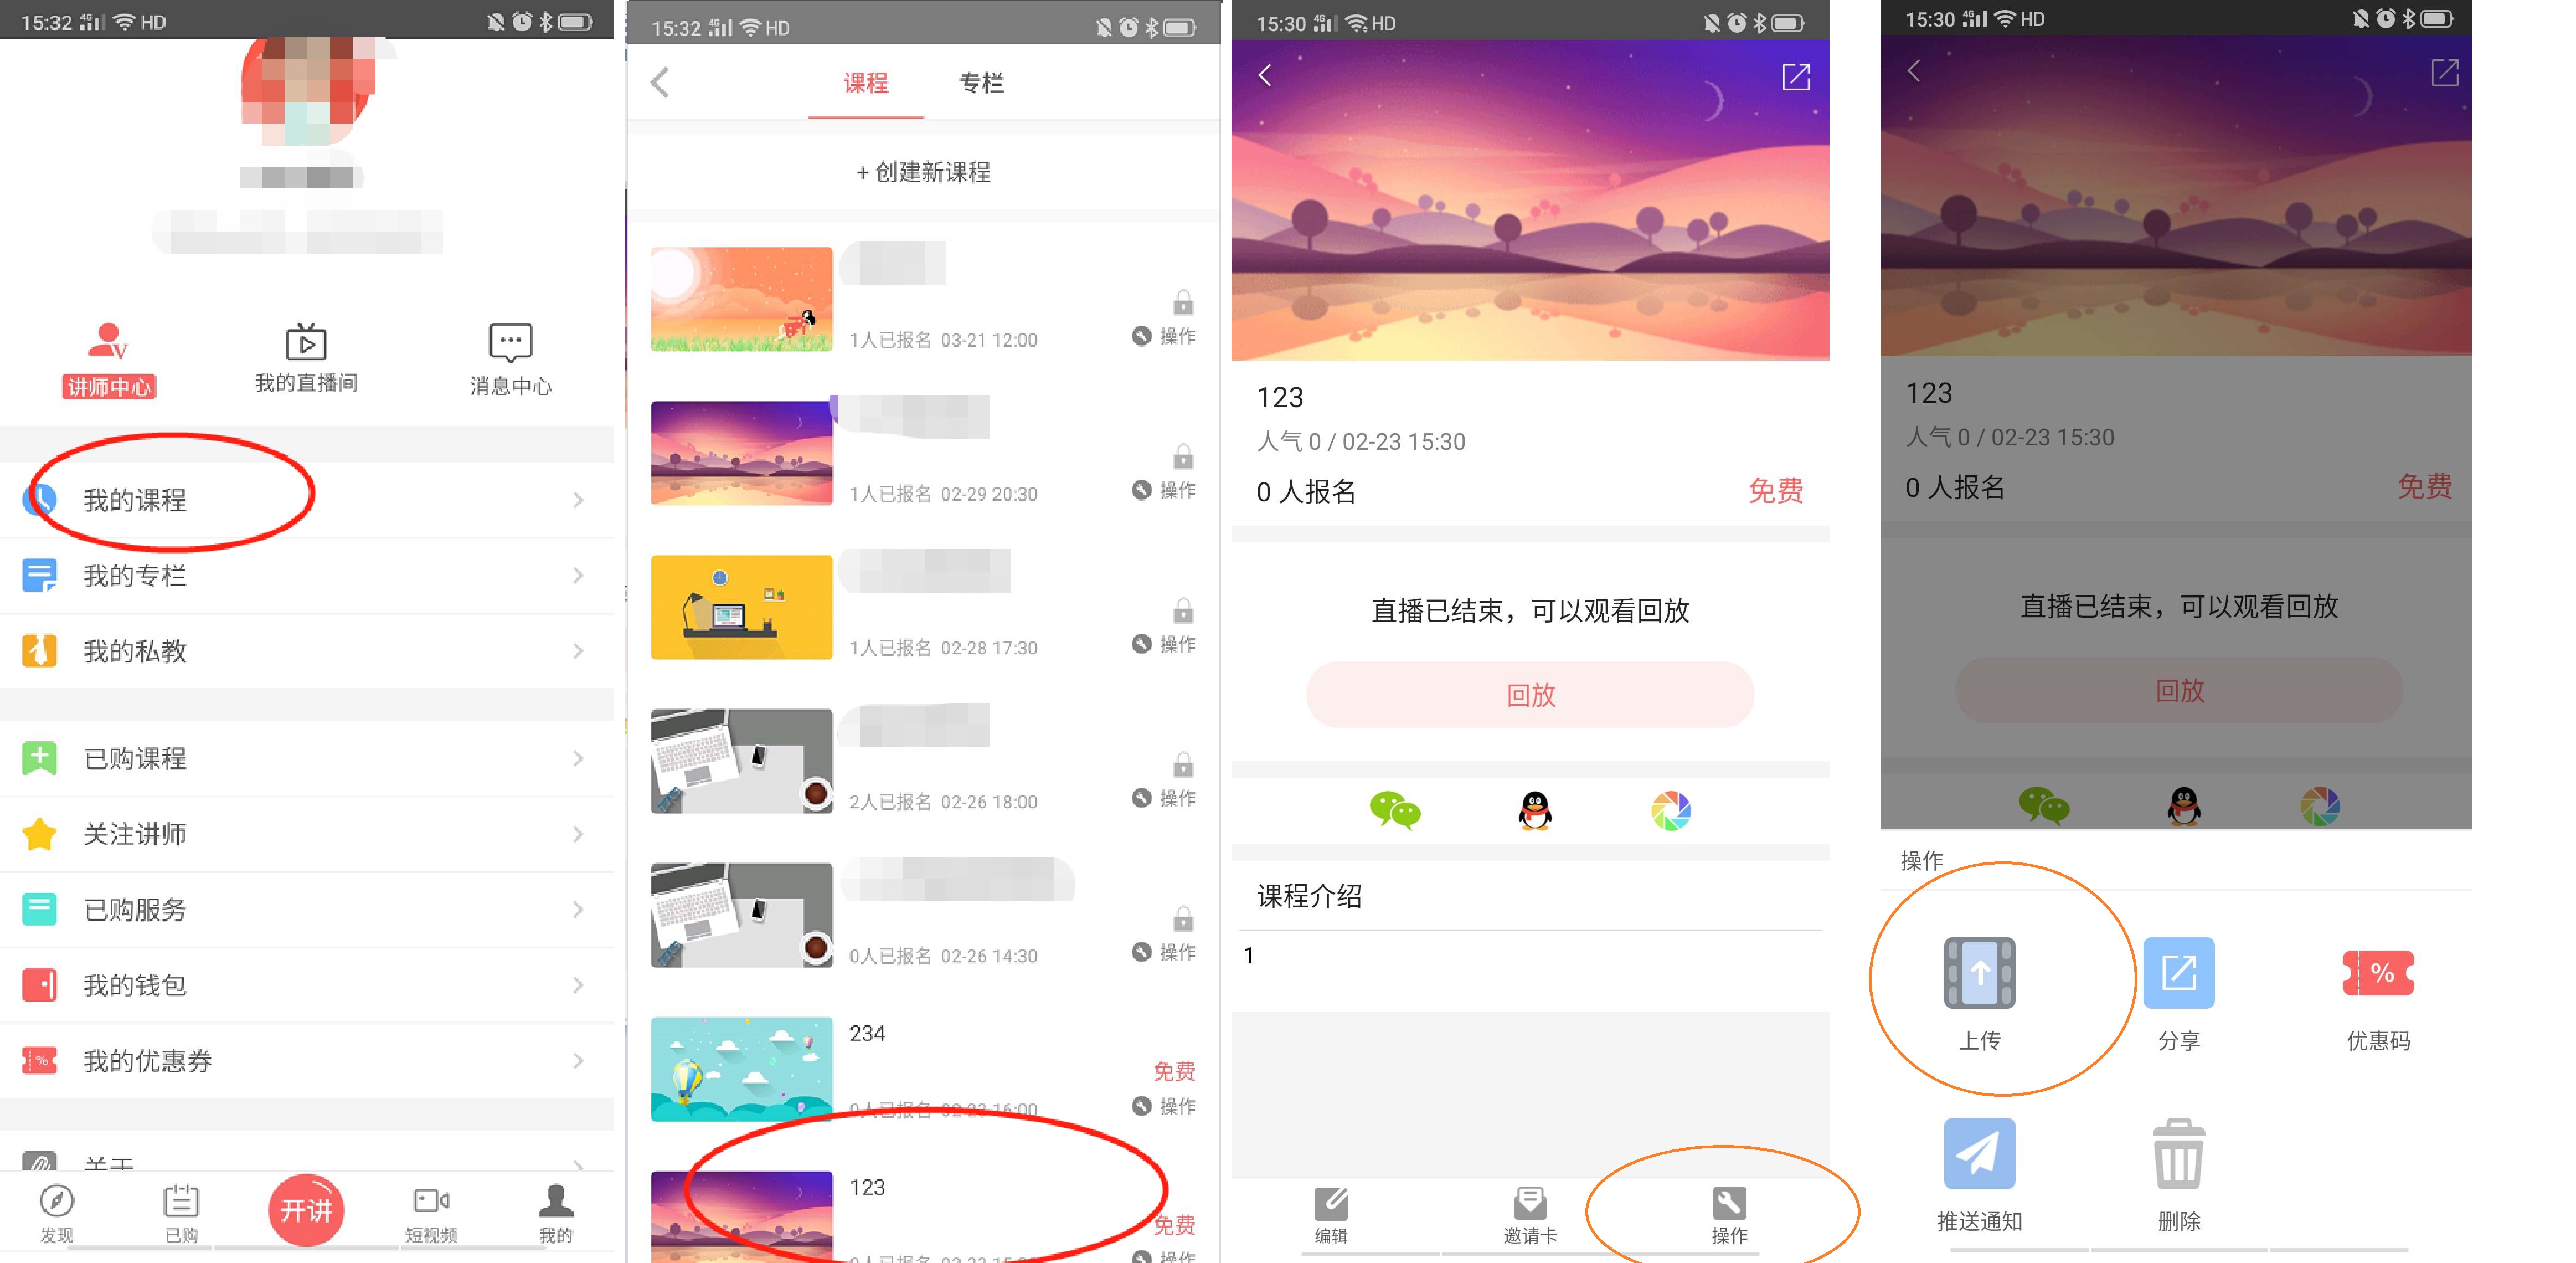 APP照片上传方式的使用说明 - 承影互联（北京）科技有限公司 - 客户支持服务平台